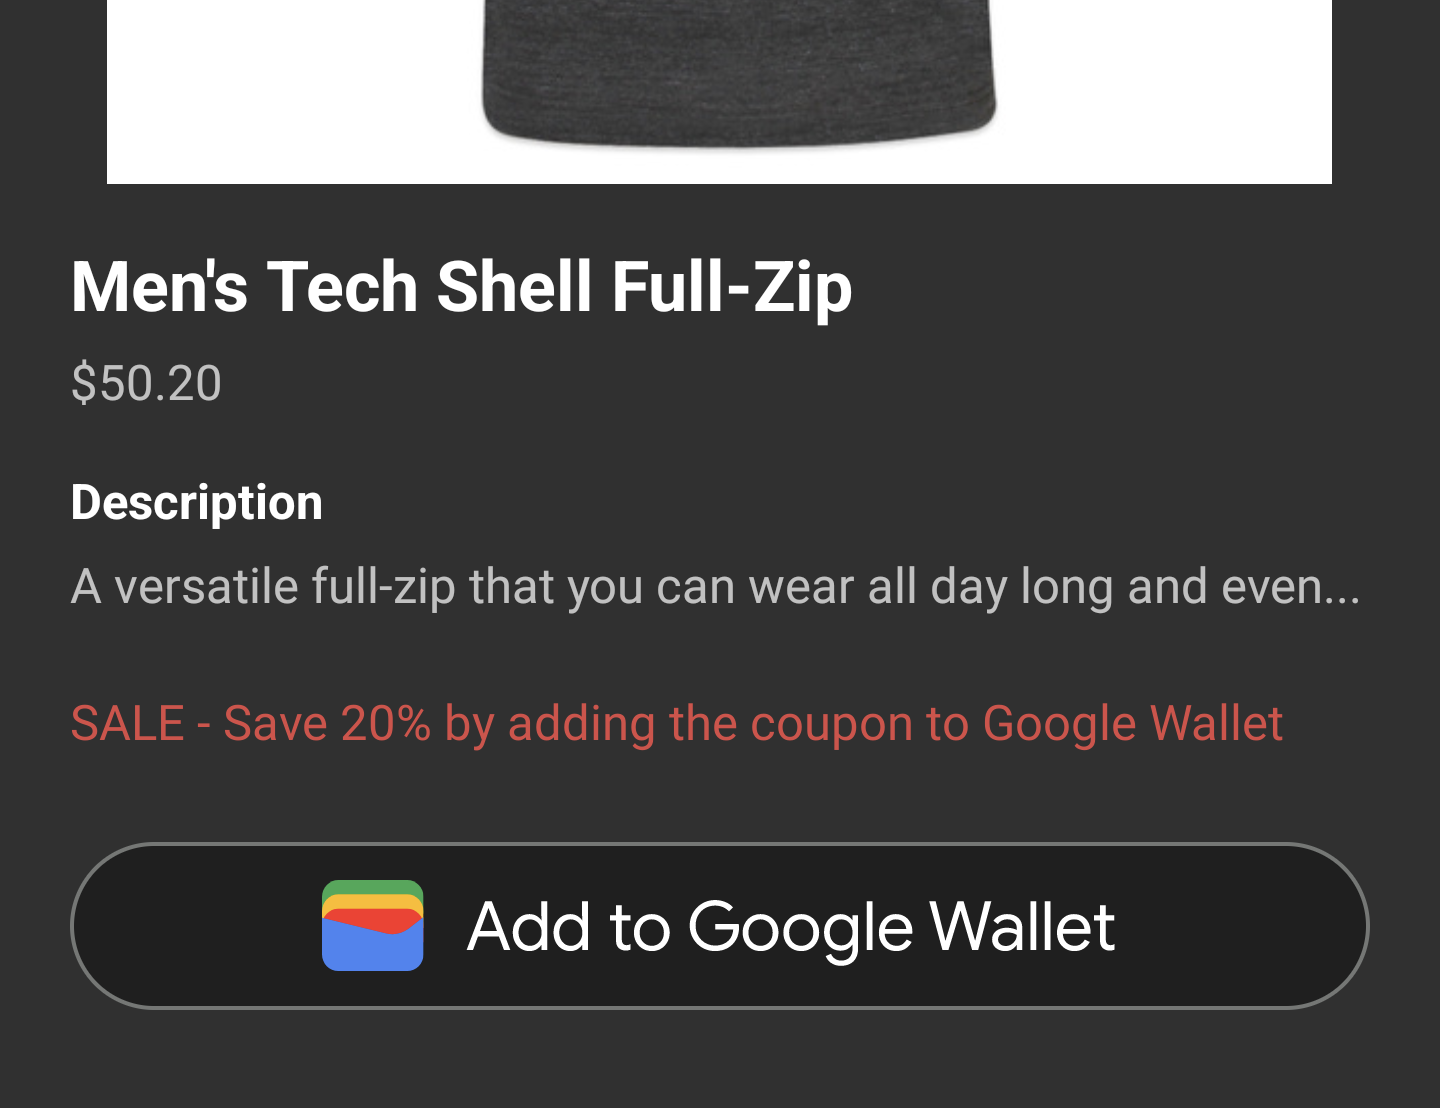 現在應用程式活動會顯示「新增至 Google 錢包」按鈕